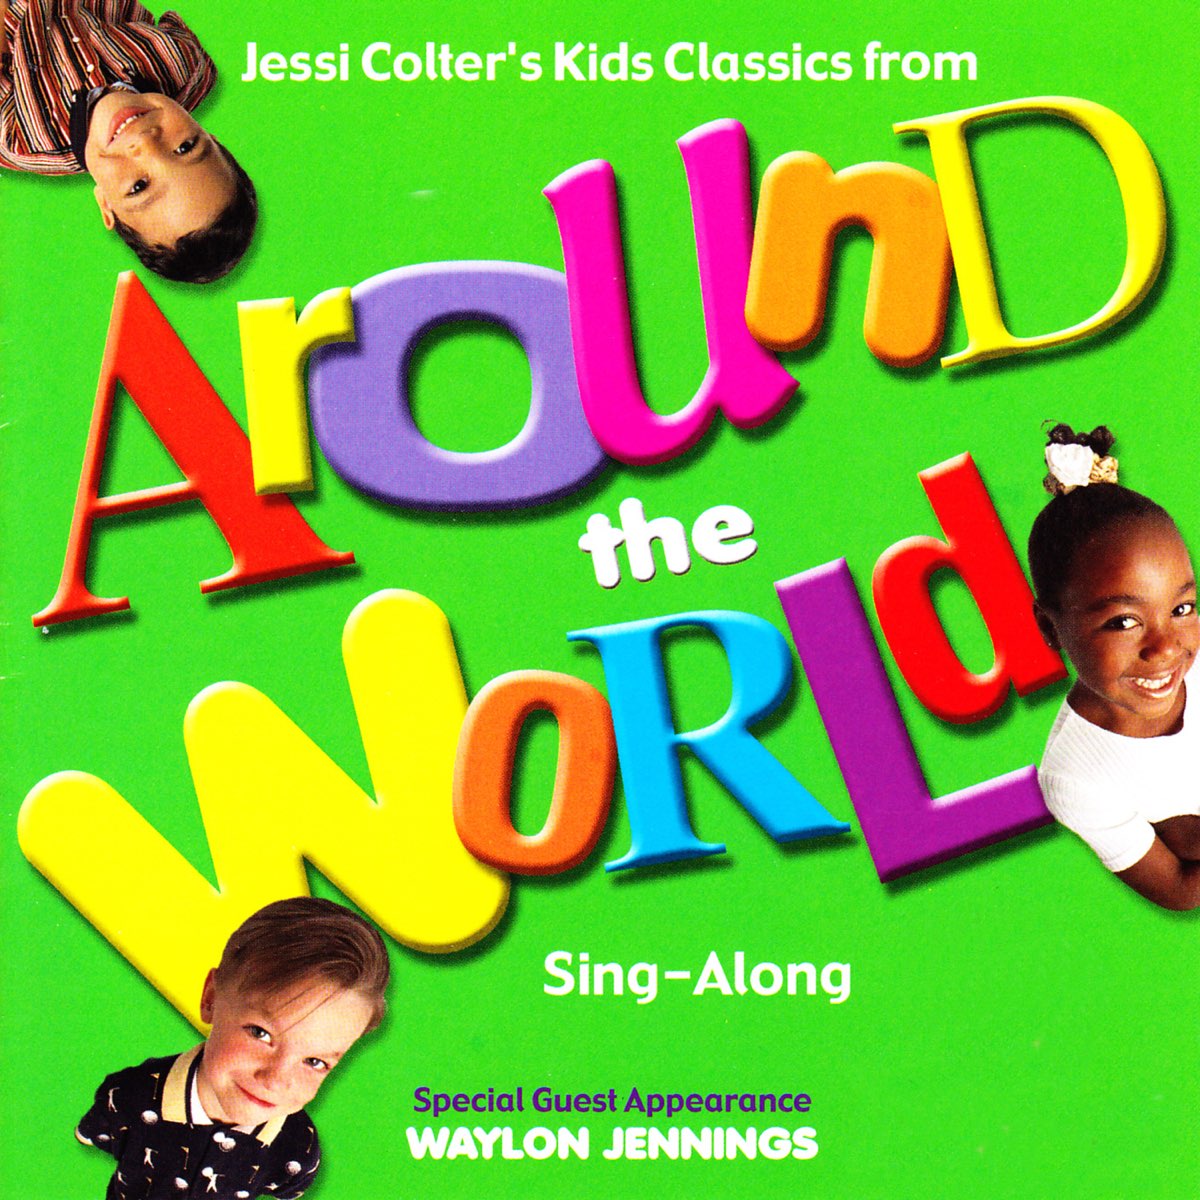 Sing world. Around the World Sing.